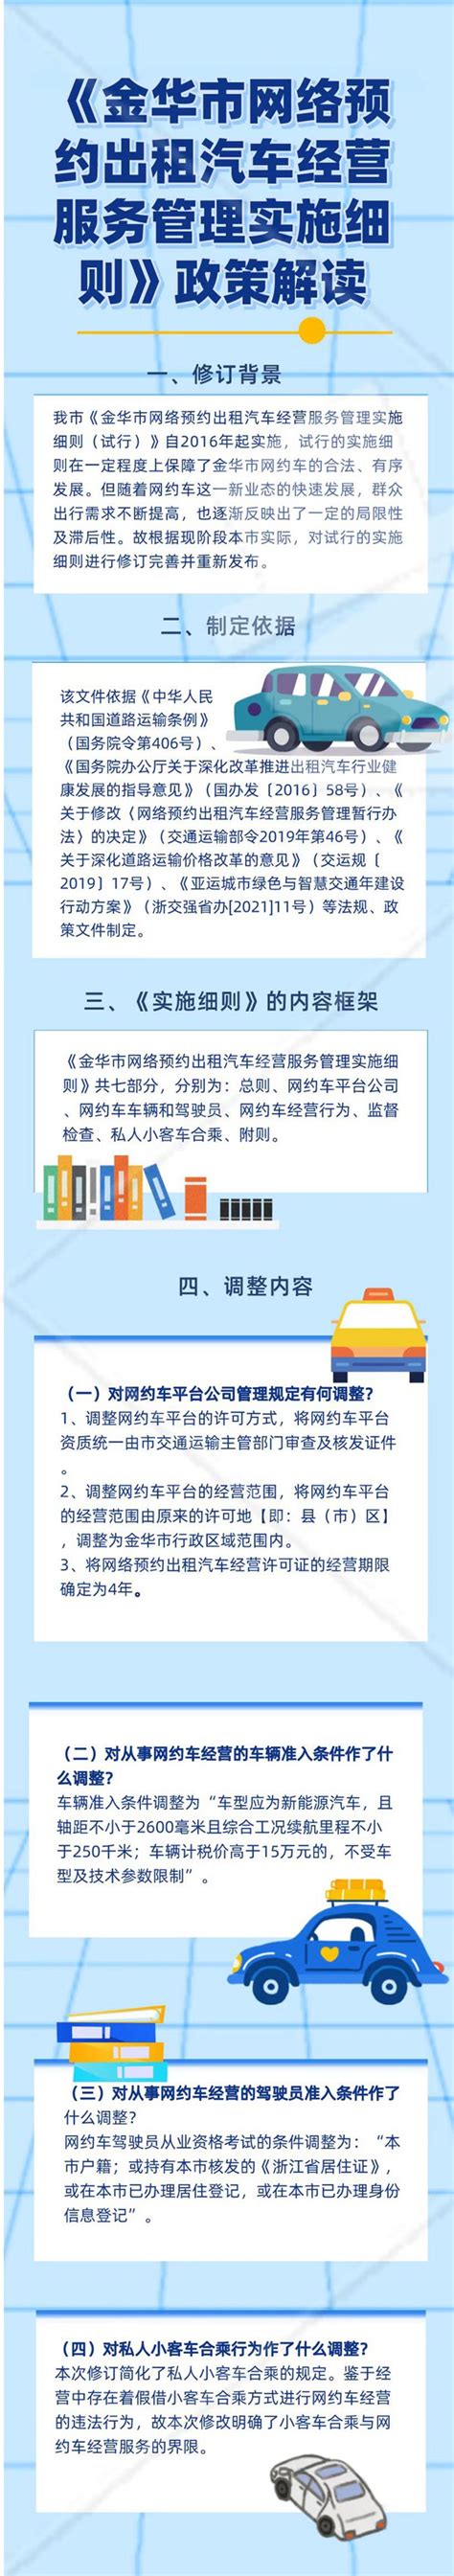 广安市网络预约出租汽车经营服务管理实施细则